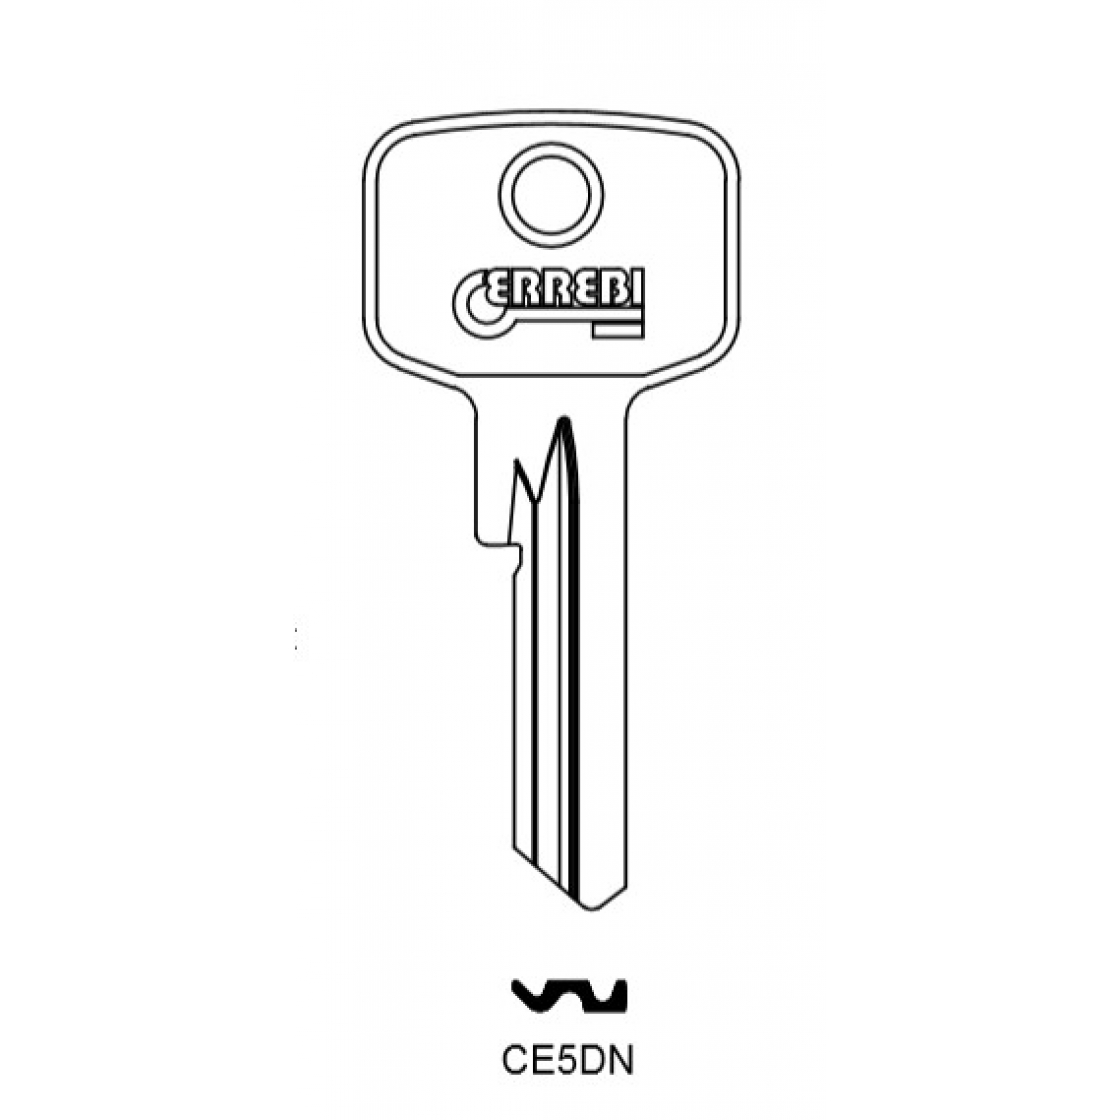 25 Stück EV5-A Errebi Rohlinge Schlüsselrohlinge farbige Schlüssel Keyblank 